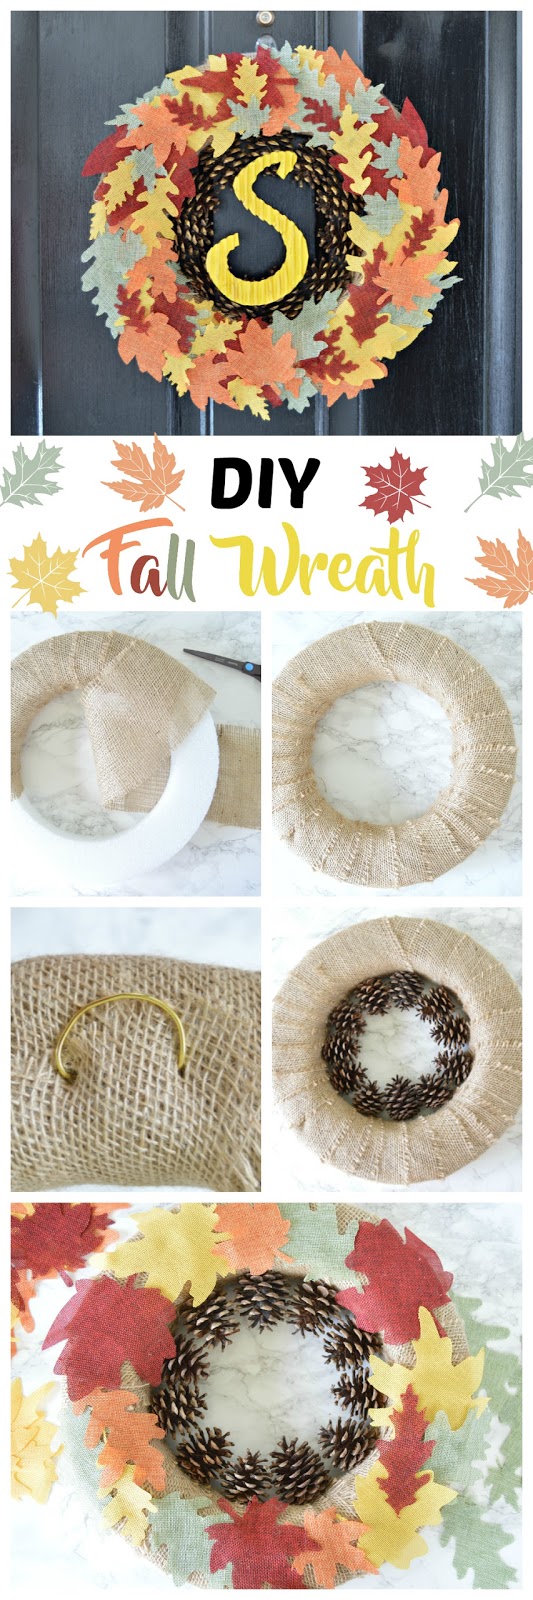 DIY Fall wreath using burlap fall leaves and pinecones